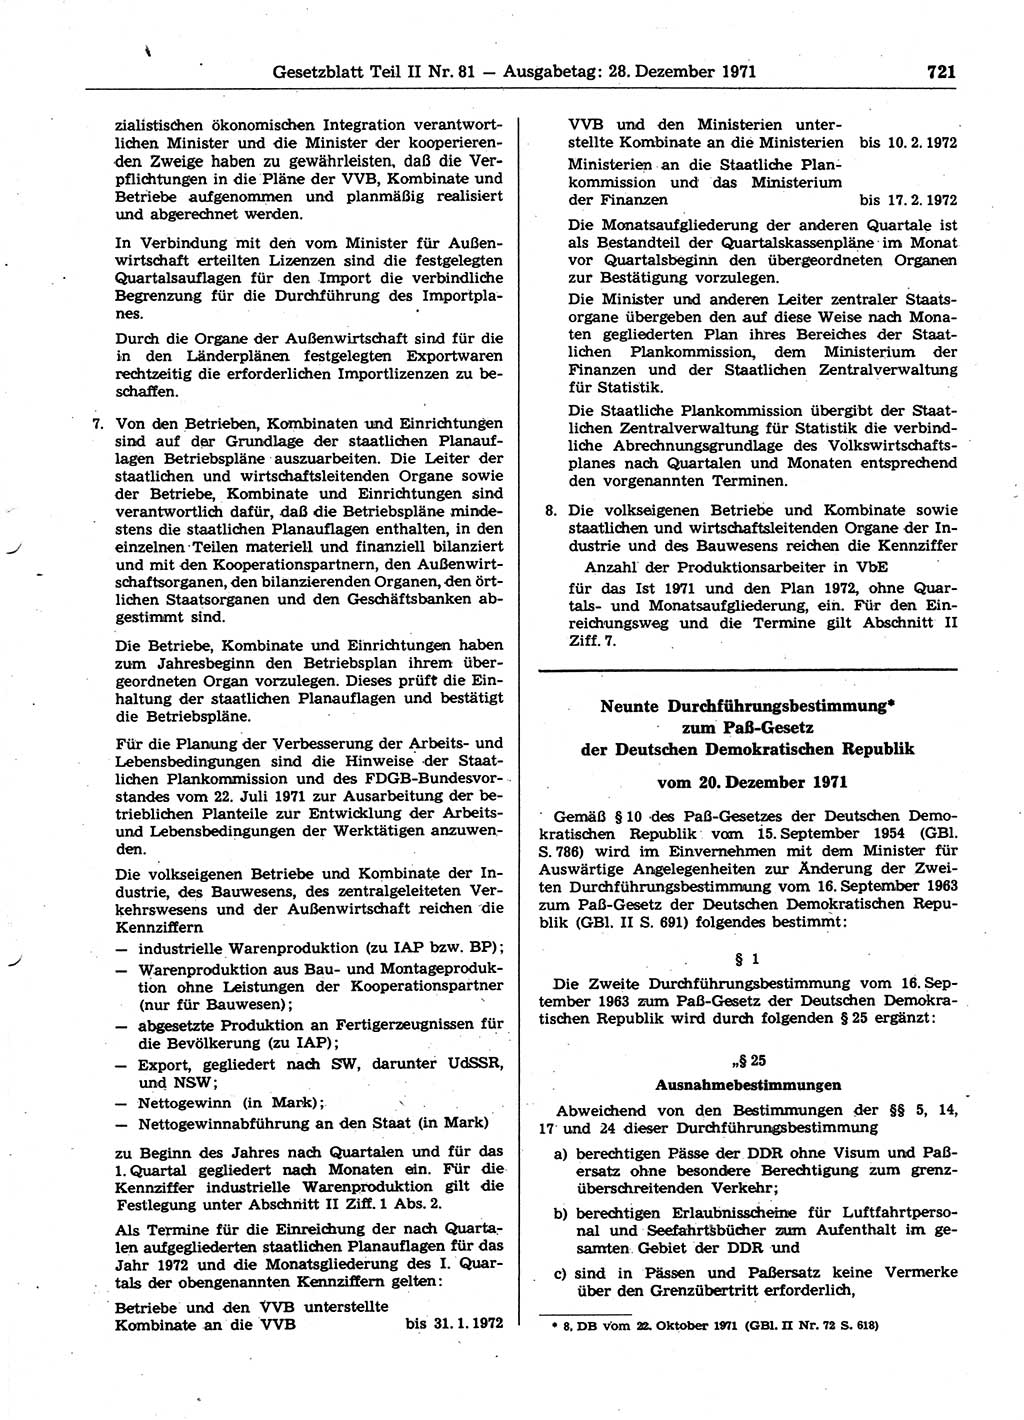 Gesetzblatt (GBl.) der Deutschen Demokratischen Republik (DDR) Teil ⅠⅠ 1971, Seite 721 (GBl. DDR ⅠⅠ 1971, S. 721)